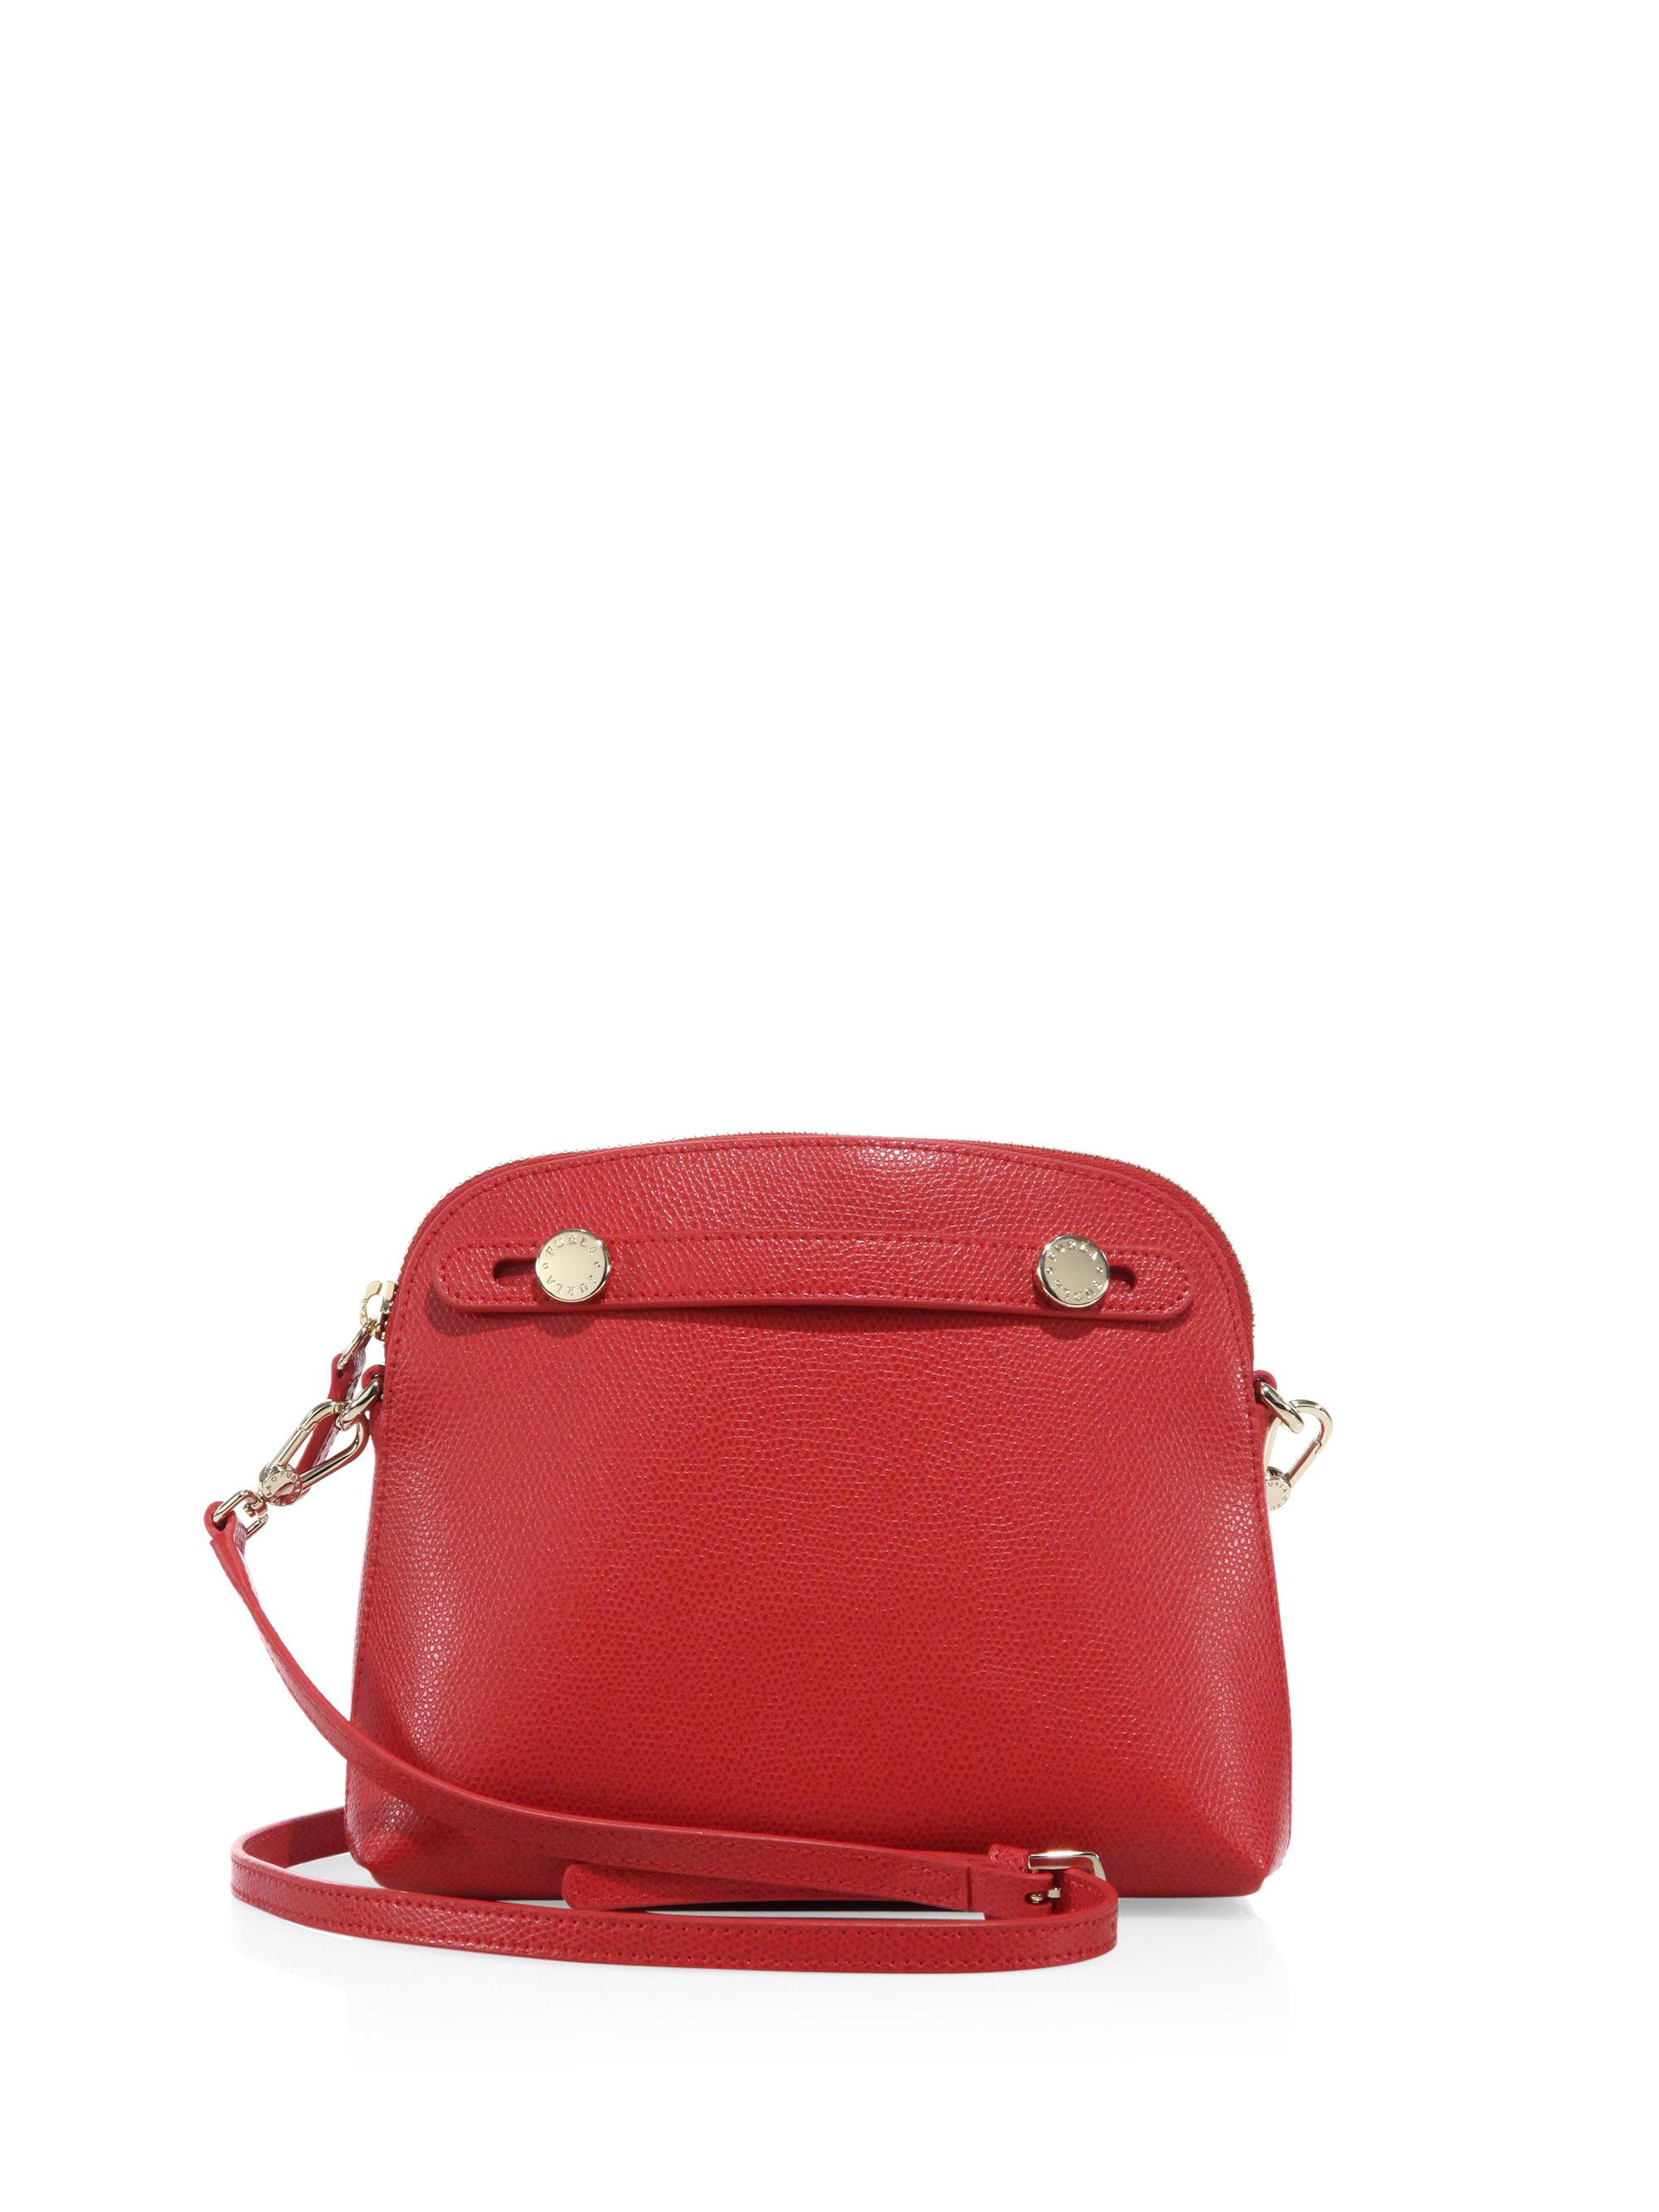 Furla Piper Mini Saffiano Leather Crossbody Bag in Red | Lyst